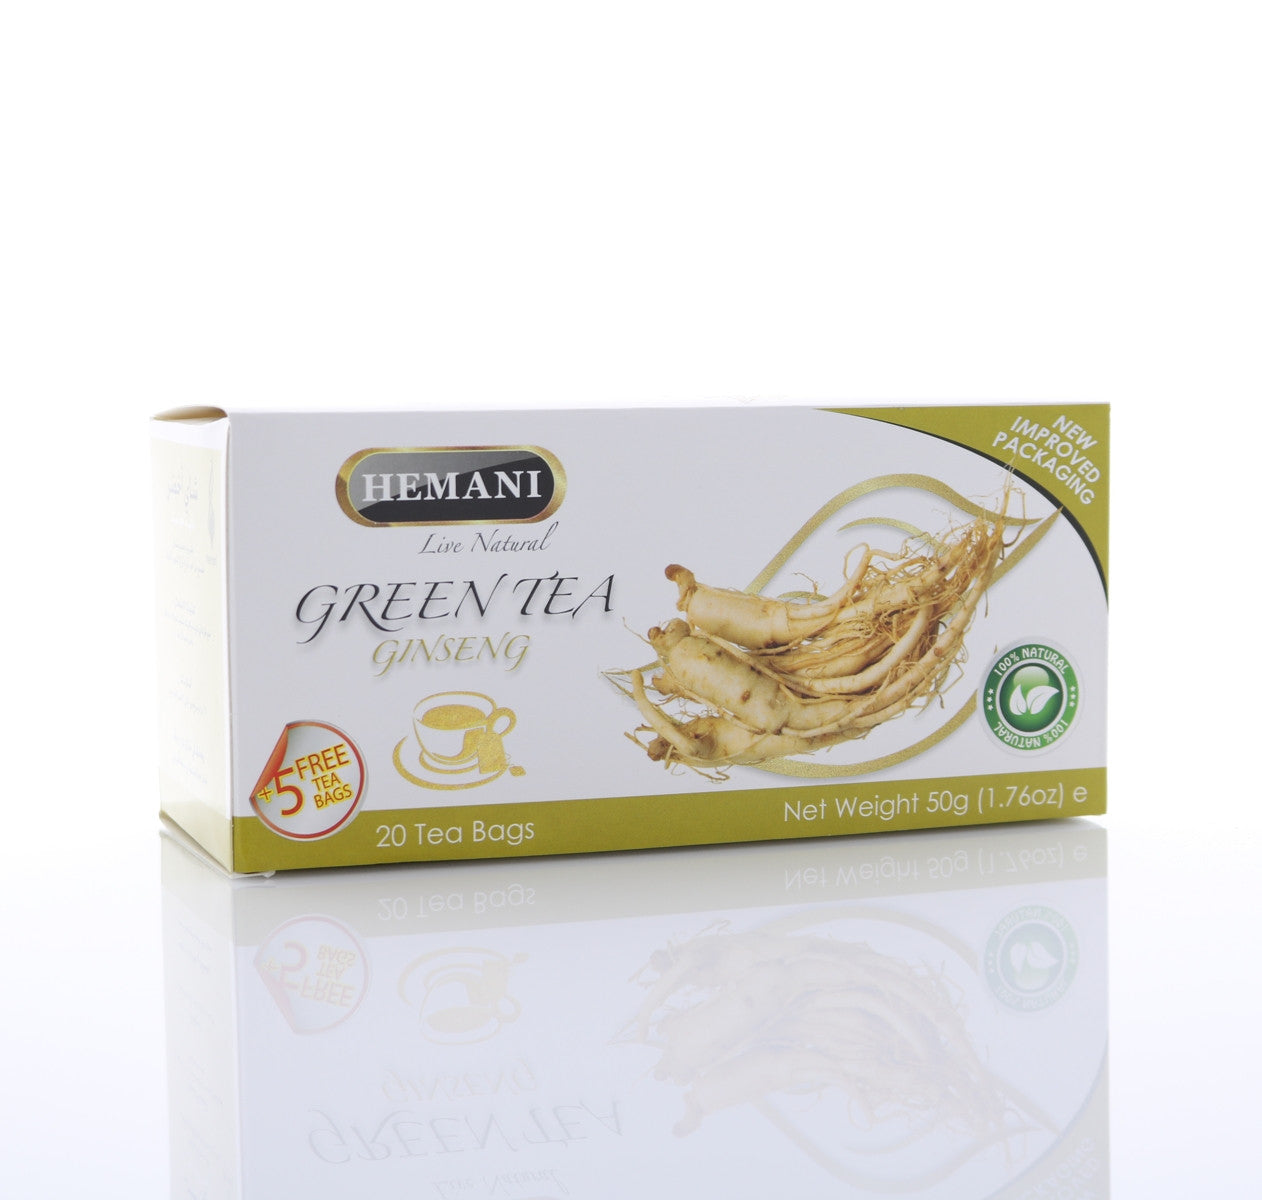 HEMANI Green Tea Ginseng 40g